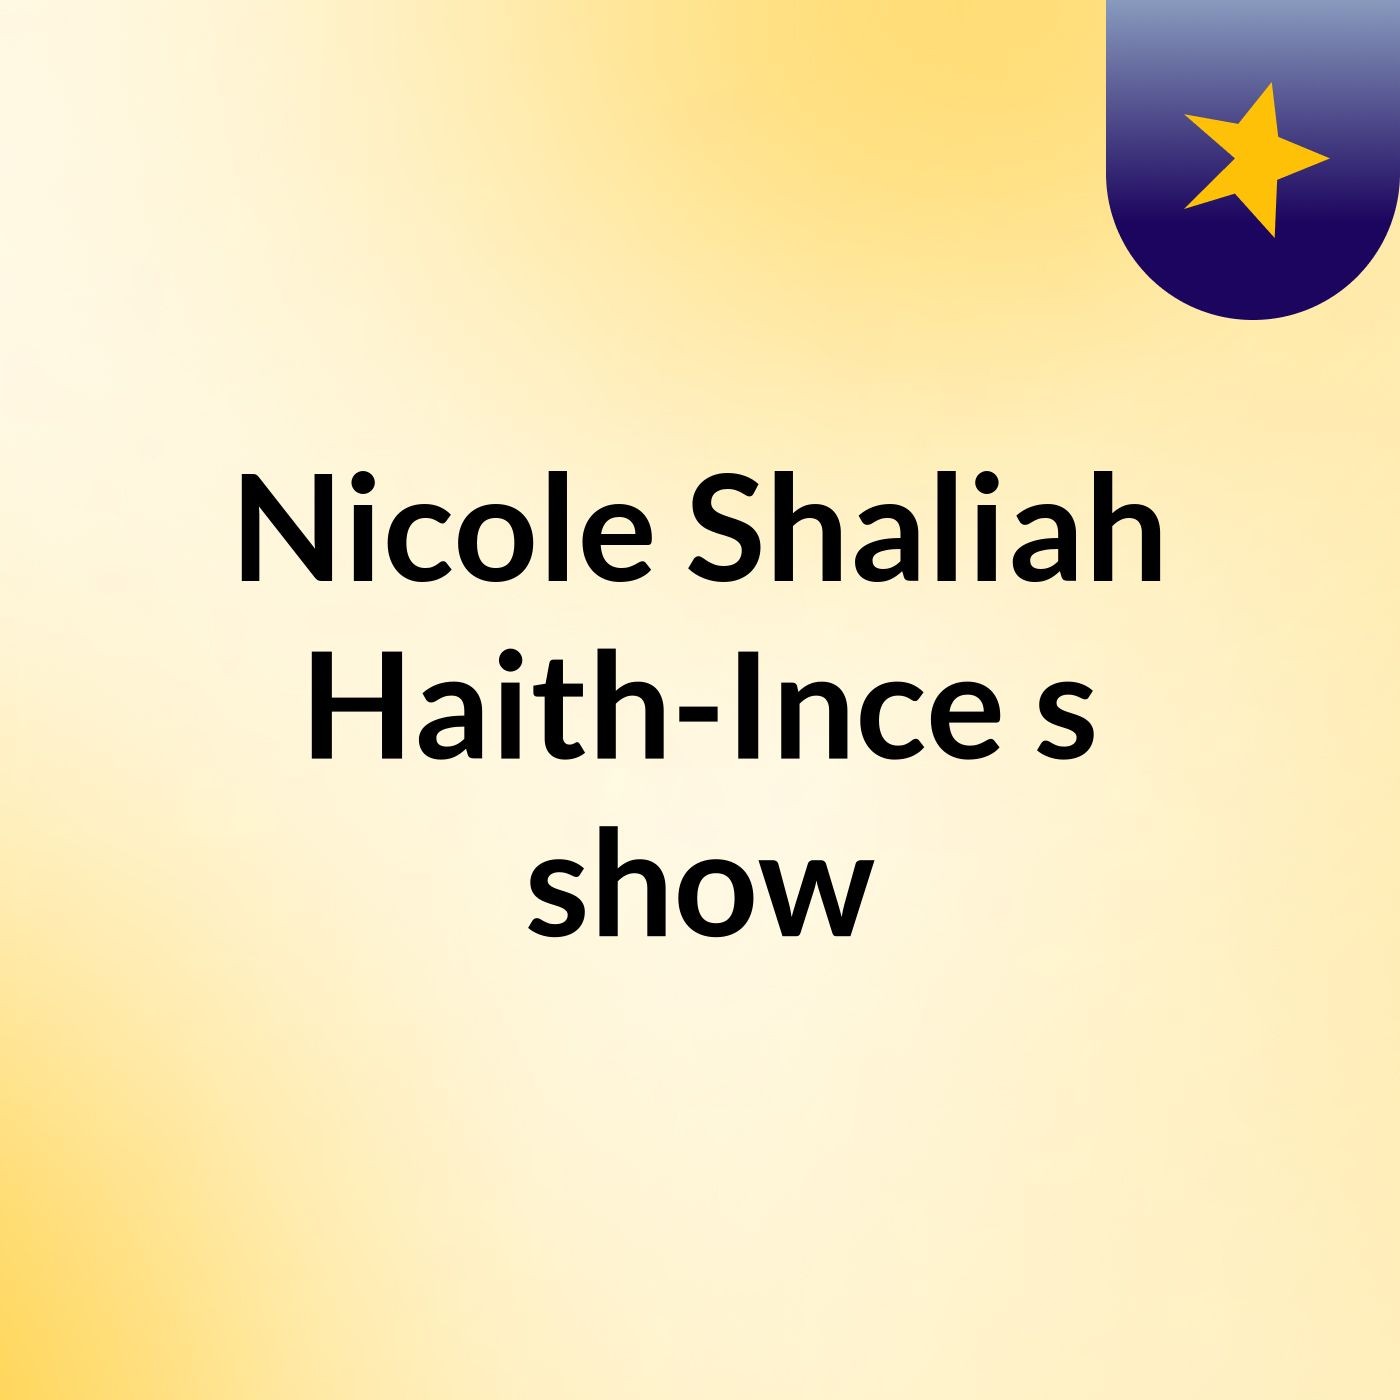 Nicole Shaliah Haith-Ince's show